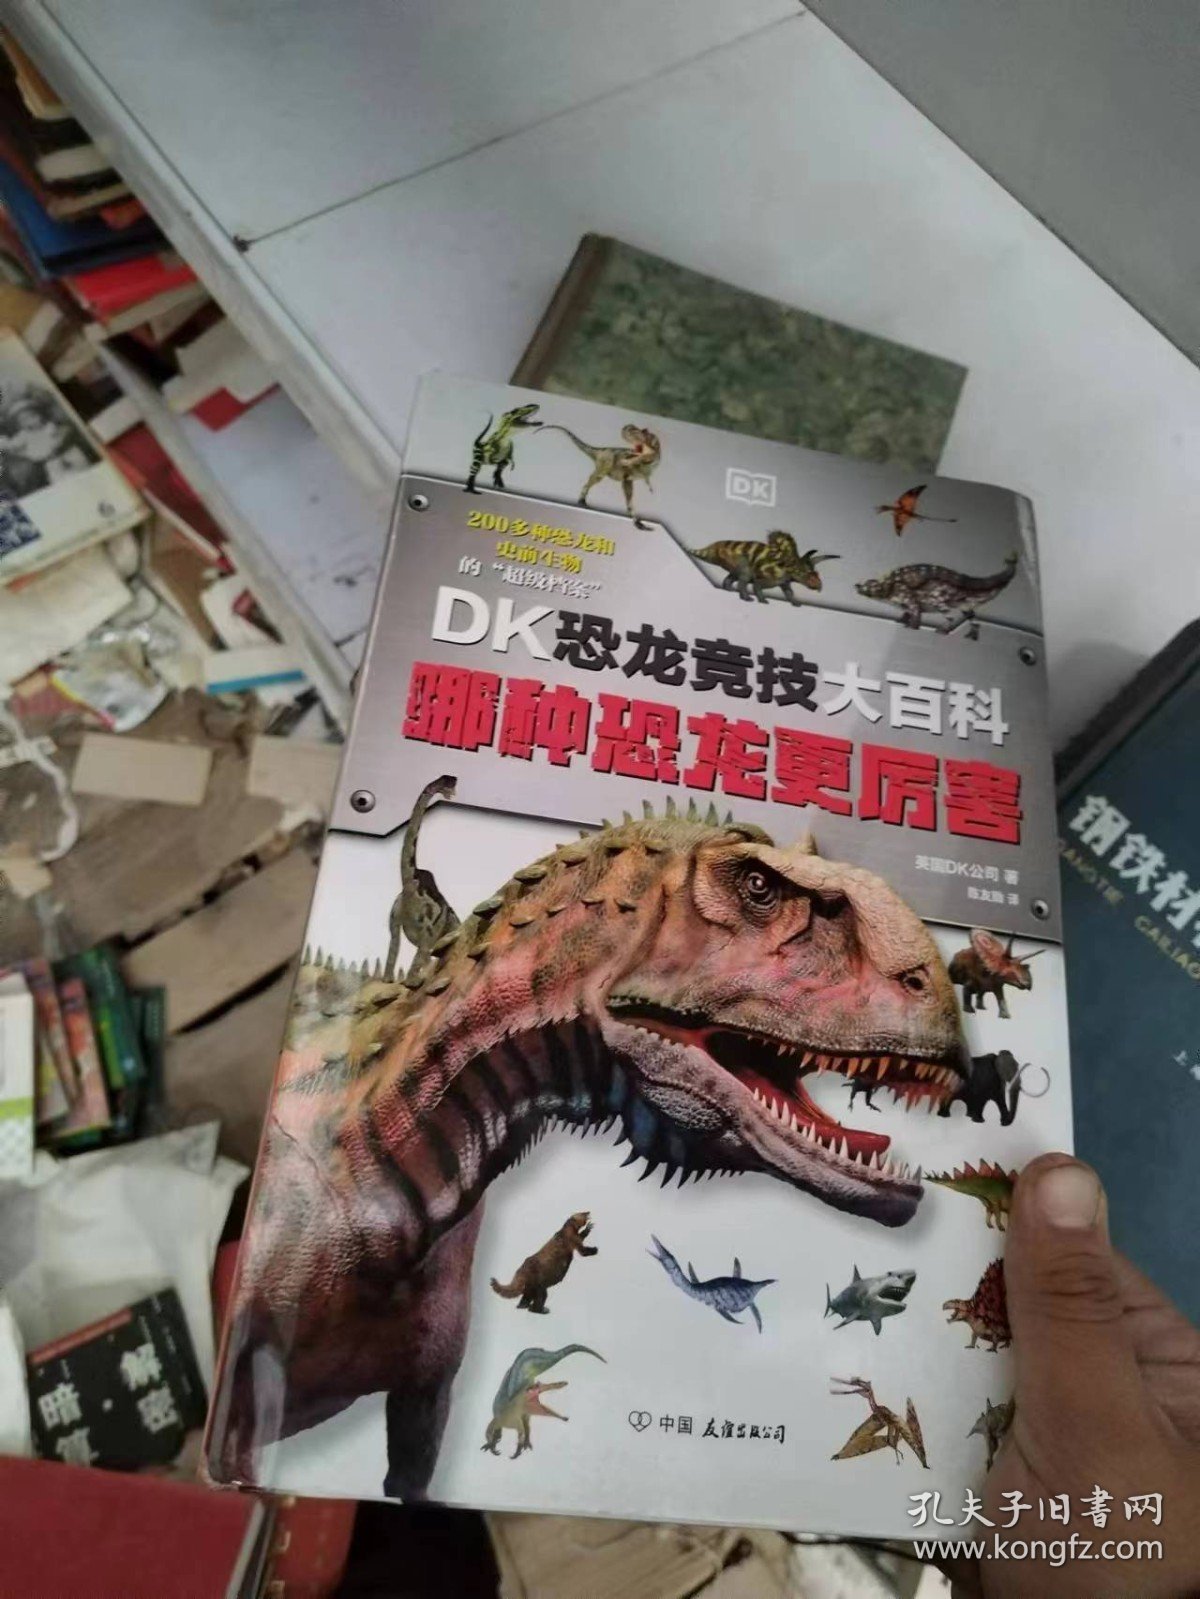 DK恐龙竞技大百科哪种恐龙更厉害